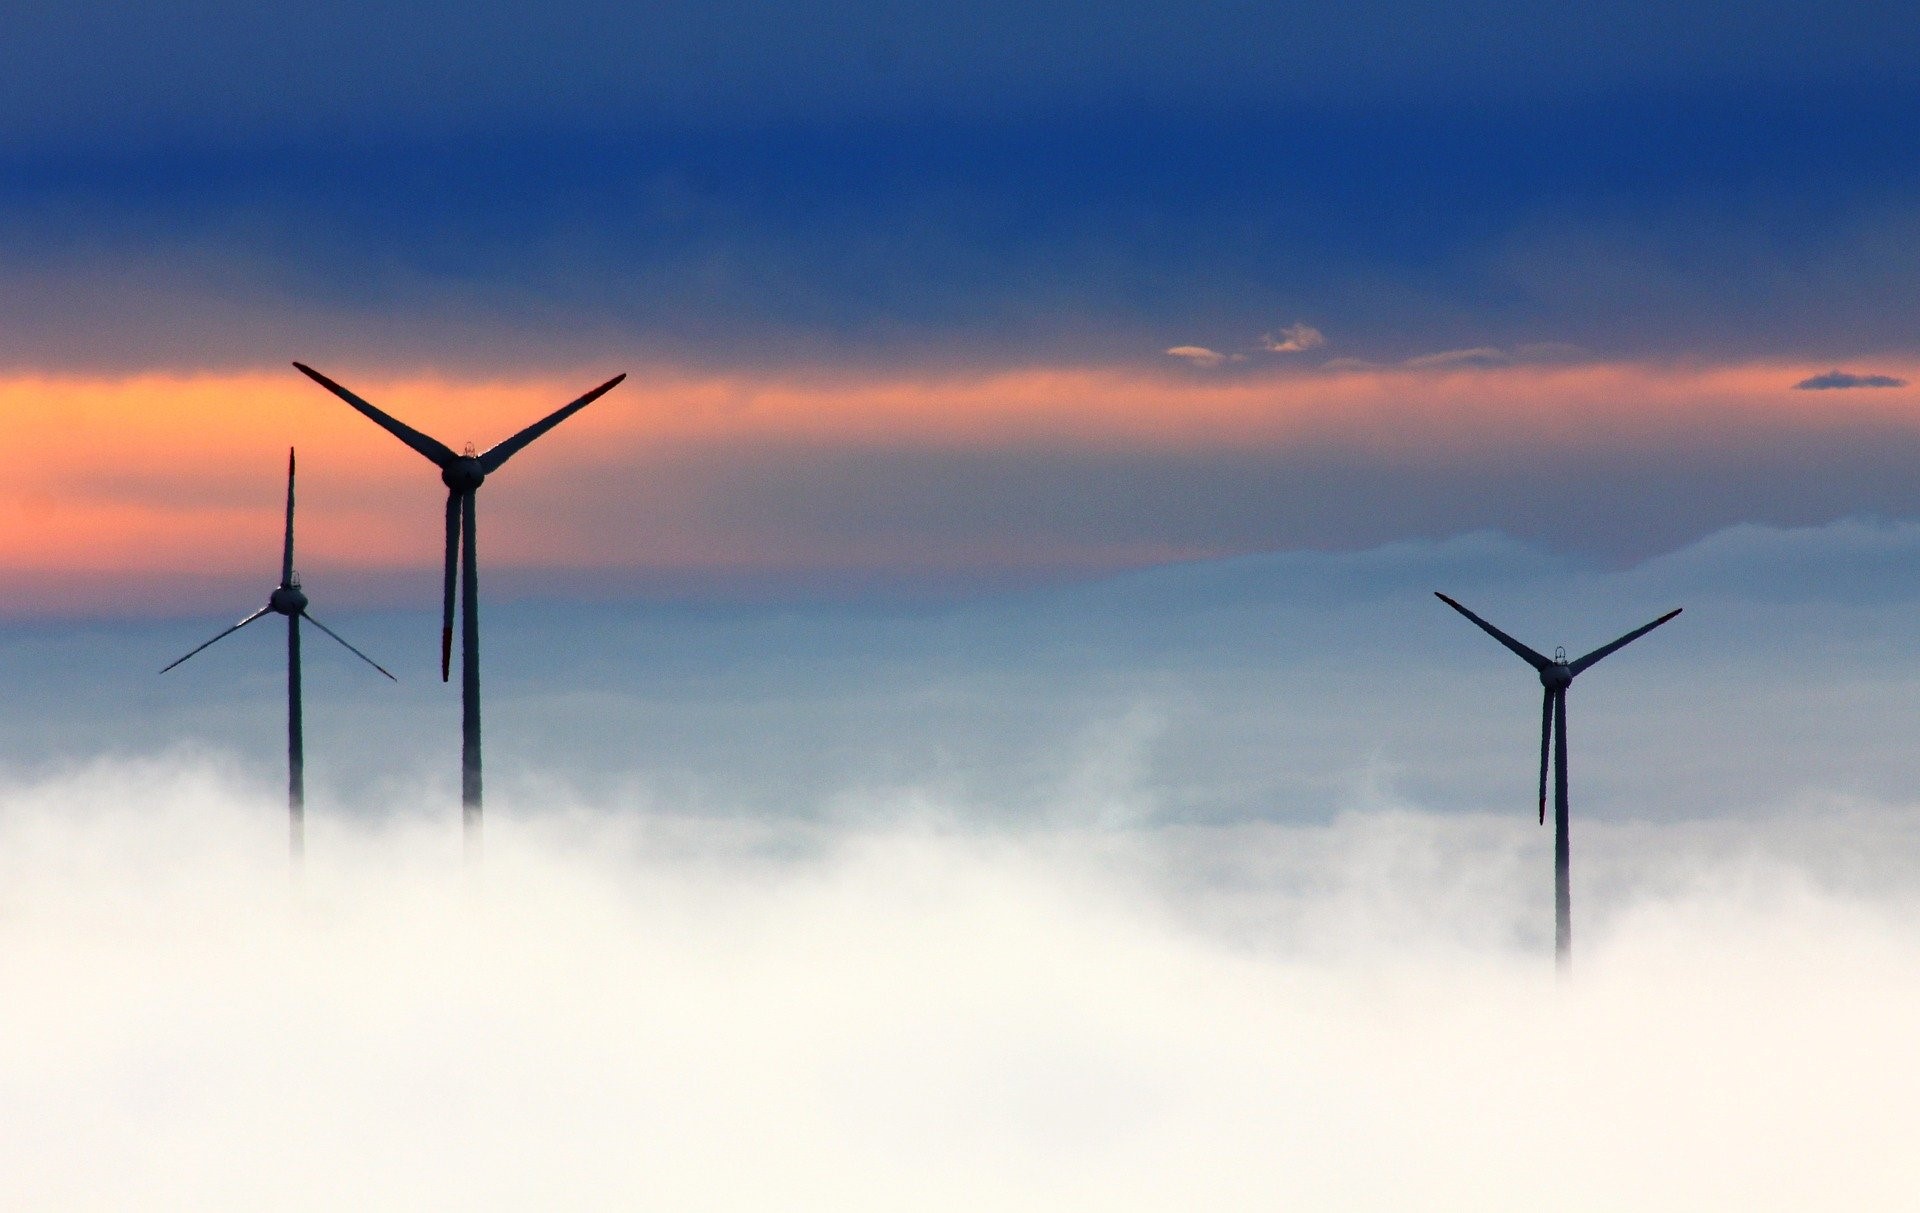 Global X lanserar Wind Energy UCITS ETF (WNDY) och Hydrogen UCITS ETF (HYCN) för att fånga den ökande efterfrågan på produktion av förnybar energi och ren teknik